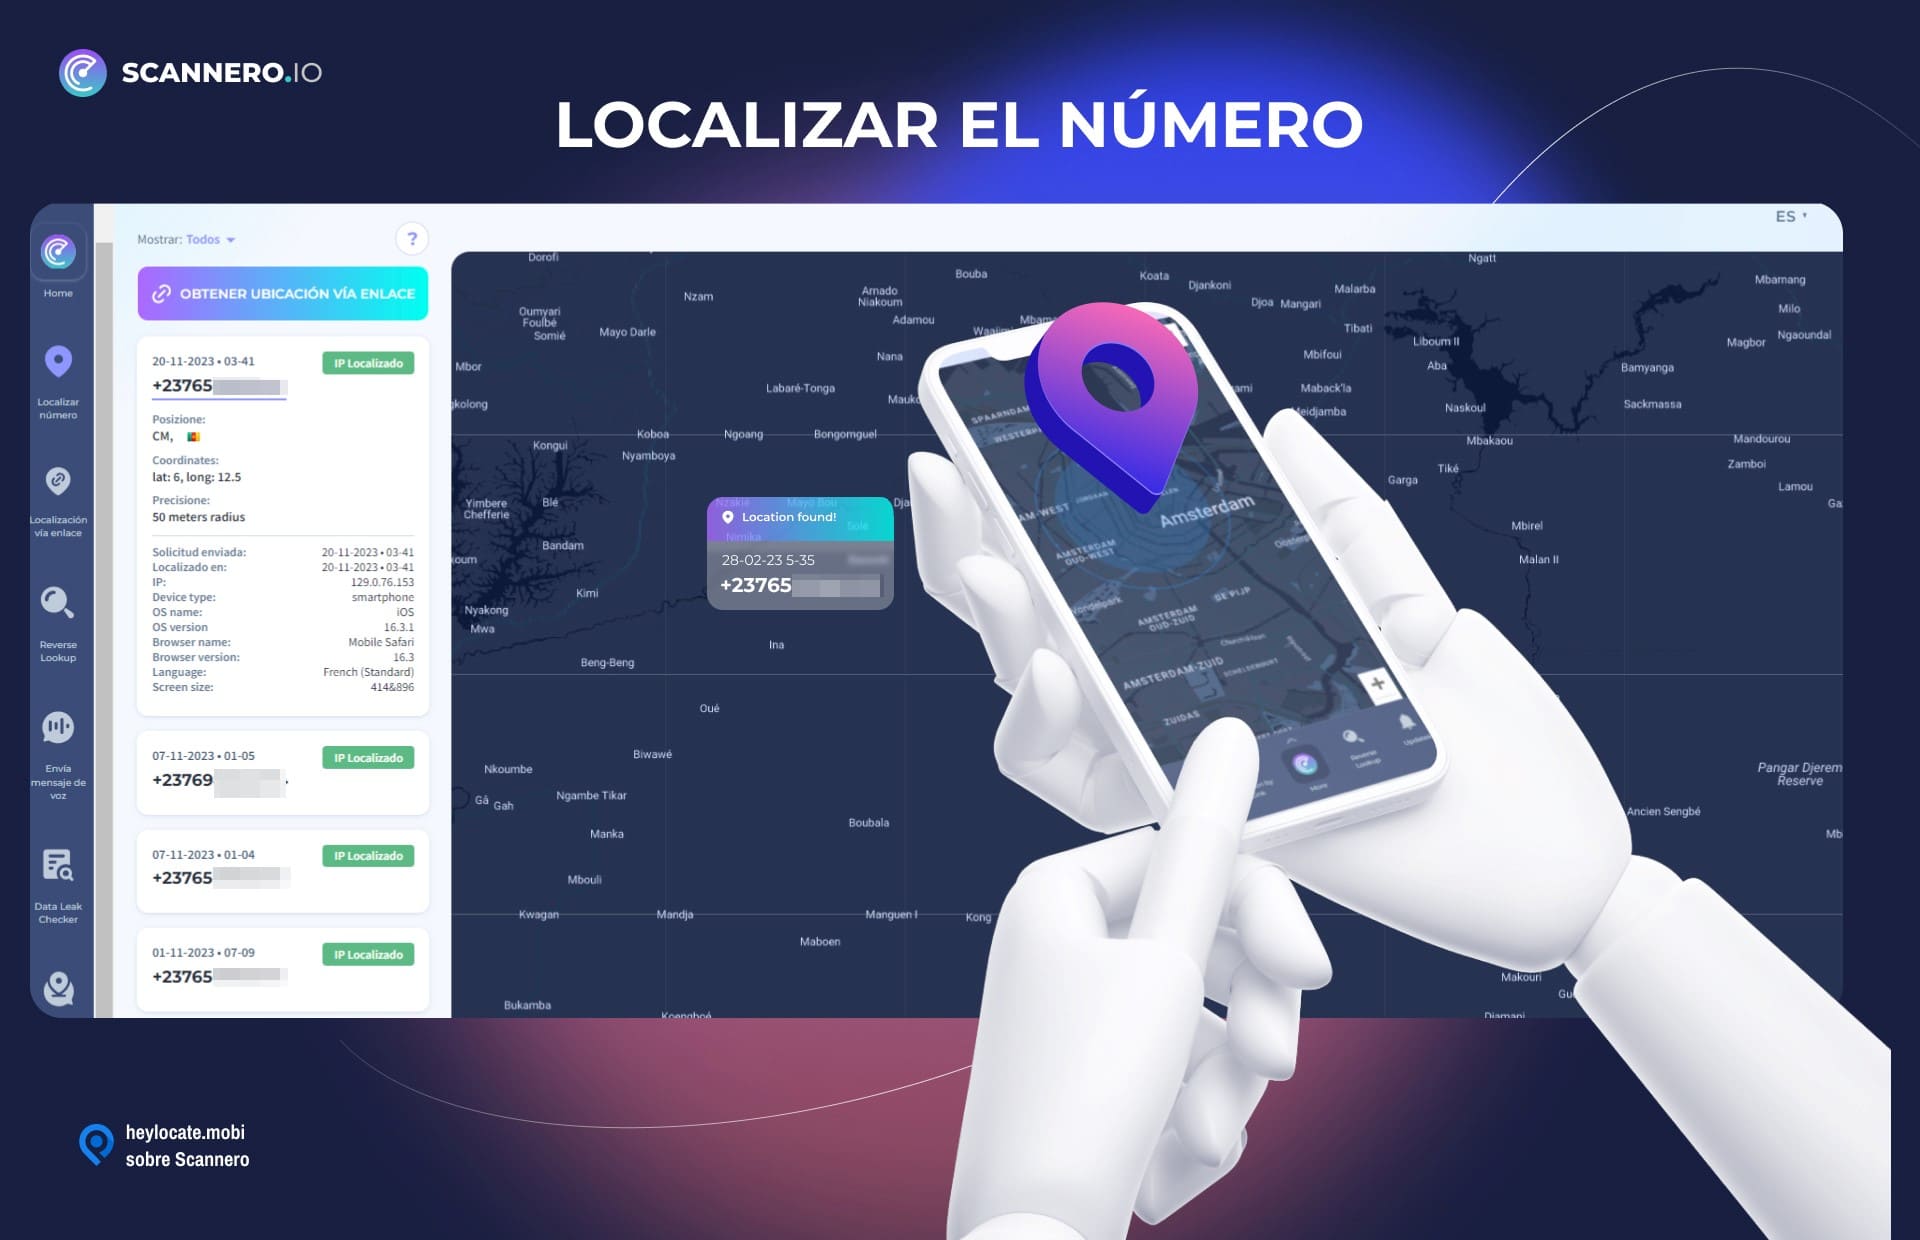 Ilustración de una mano sosteniendo un smartphone con la aplicación Scannero.io abierta, señalando una ubicación en un mapa, junto a elementos de la interfaz que muestran el seguimiento de la ubicación por número de teléfono.